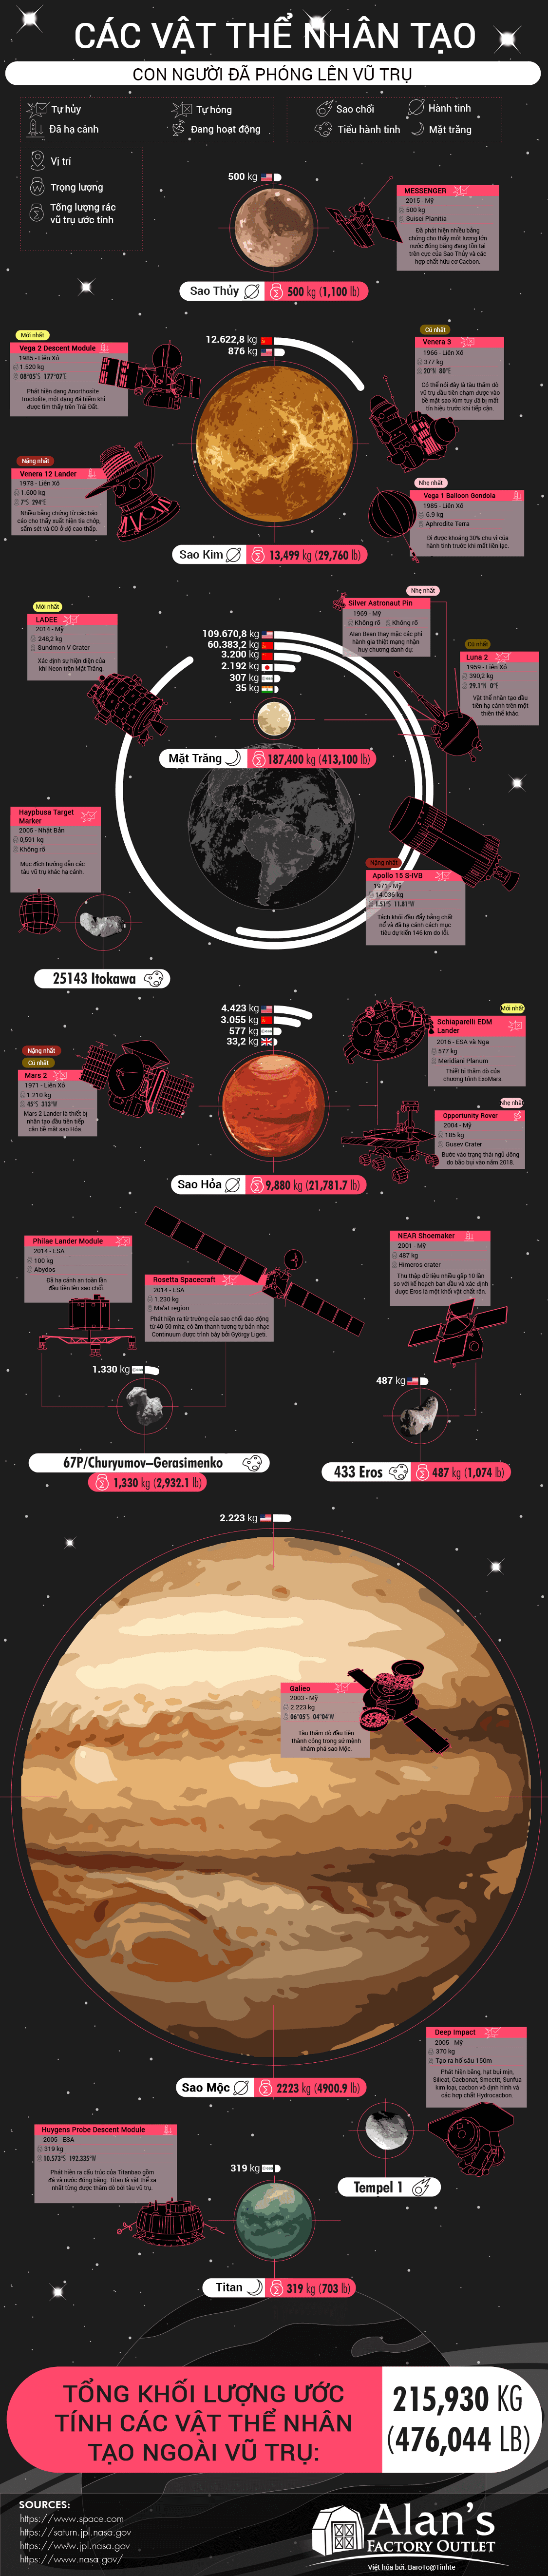 [Infographic] Nhân loại đã "xả" bao nhiêu rác ra ngoài vũ trụ? - Ảnh 1